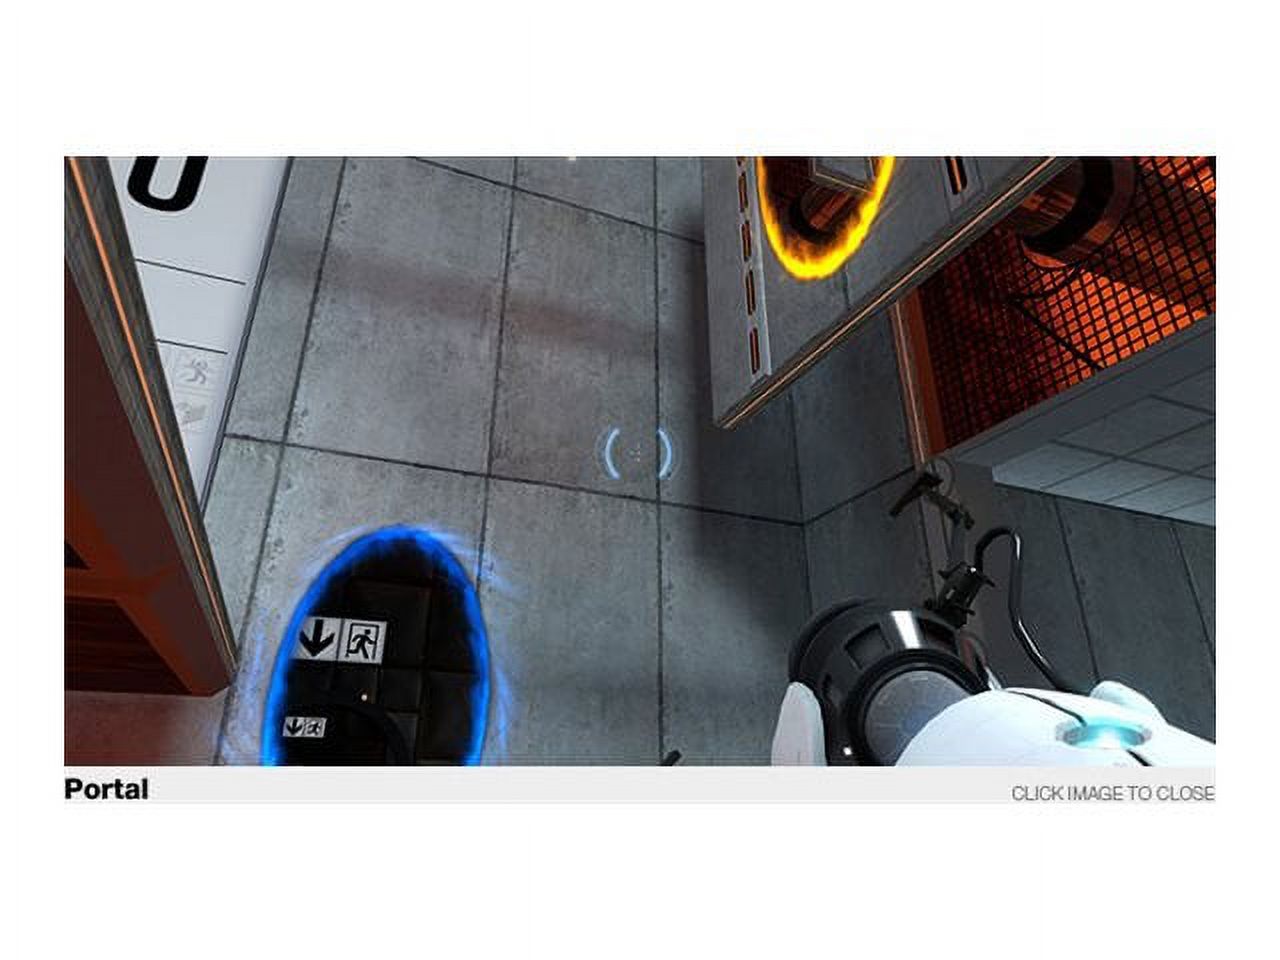 EA Portal 2 - image 5 of 9